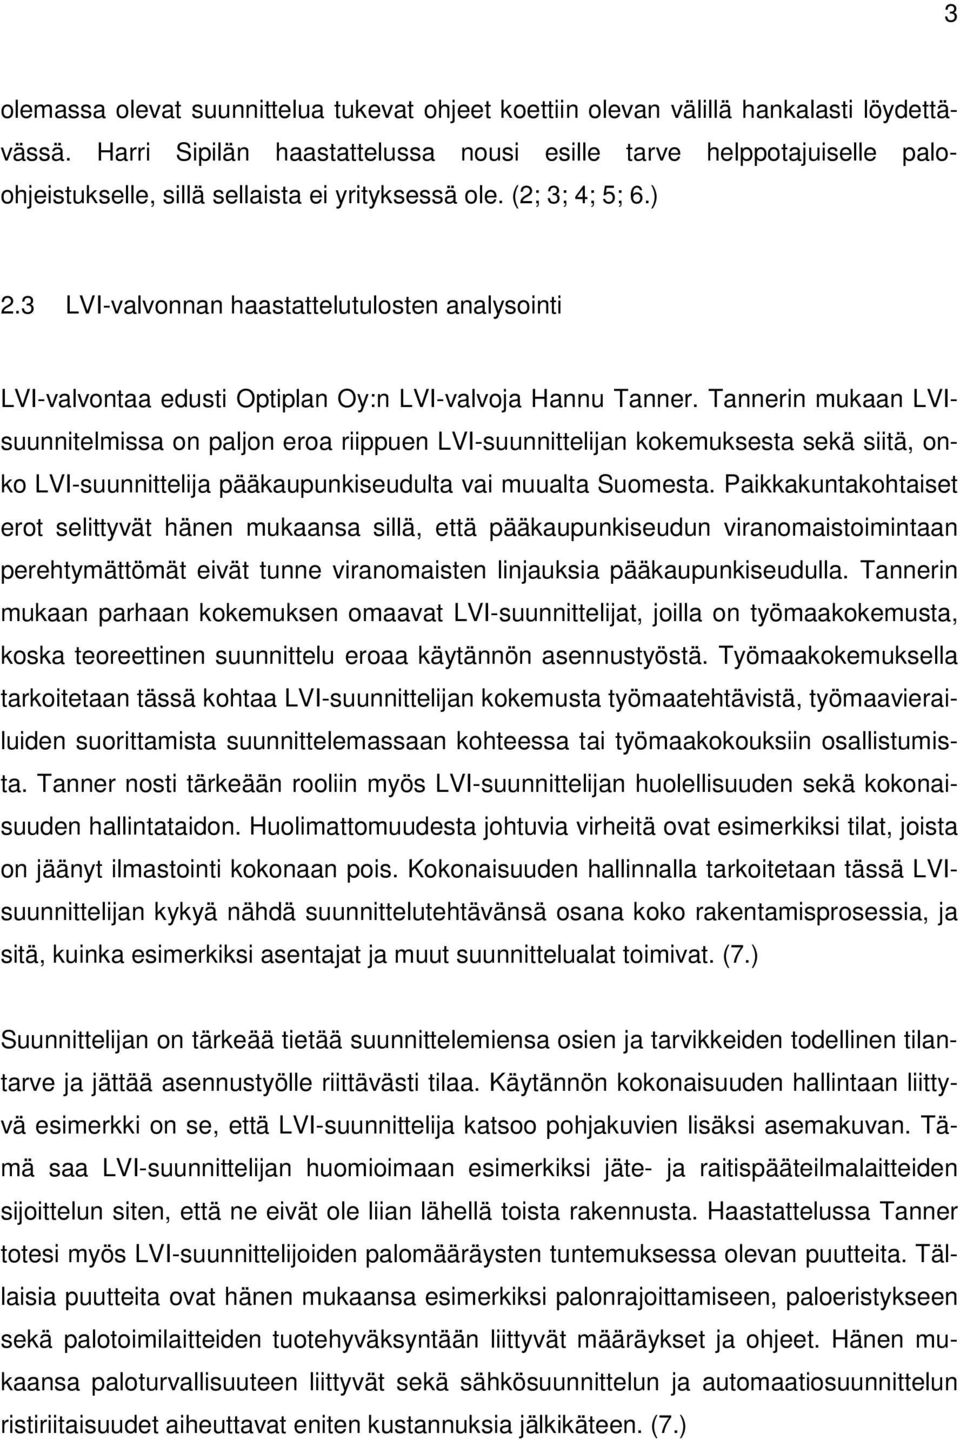 3 LVI-valvonnan haastattelutulosten analysointi LVI-valvontaa edusti Optiplan Oy:n LVI-valvoja Hannu Tanner.